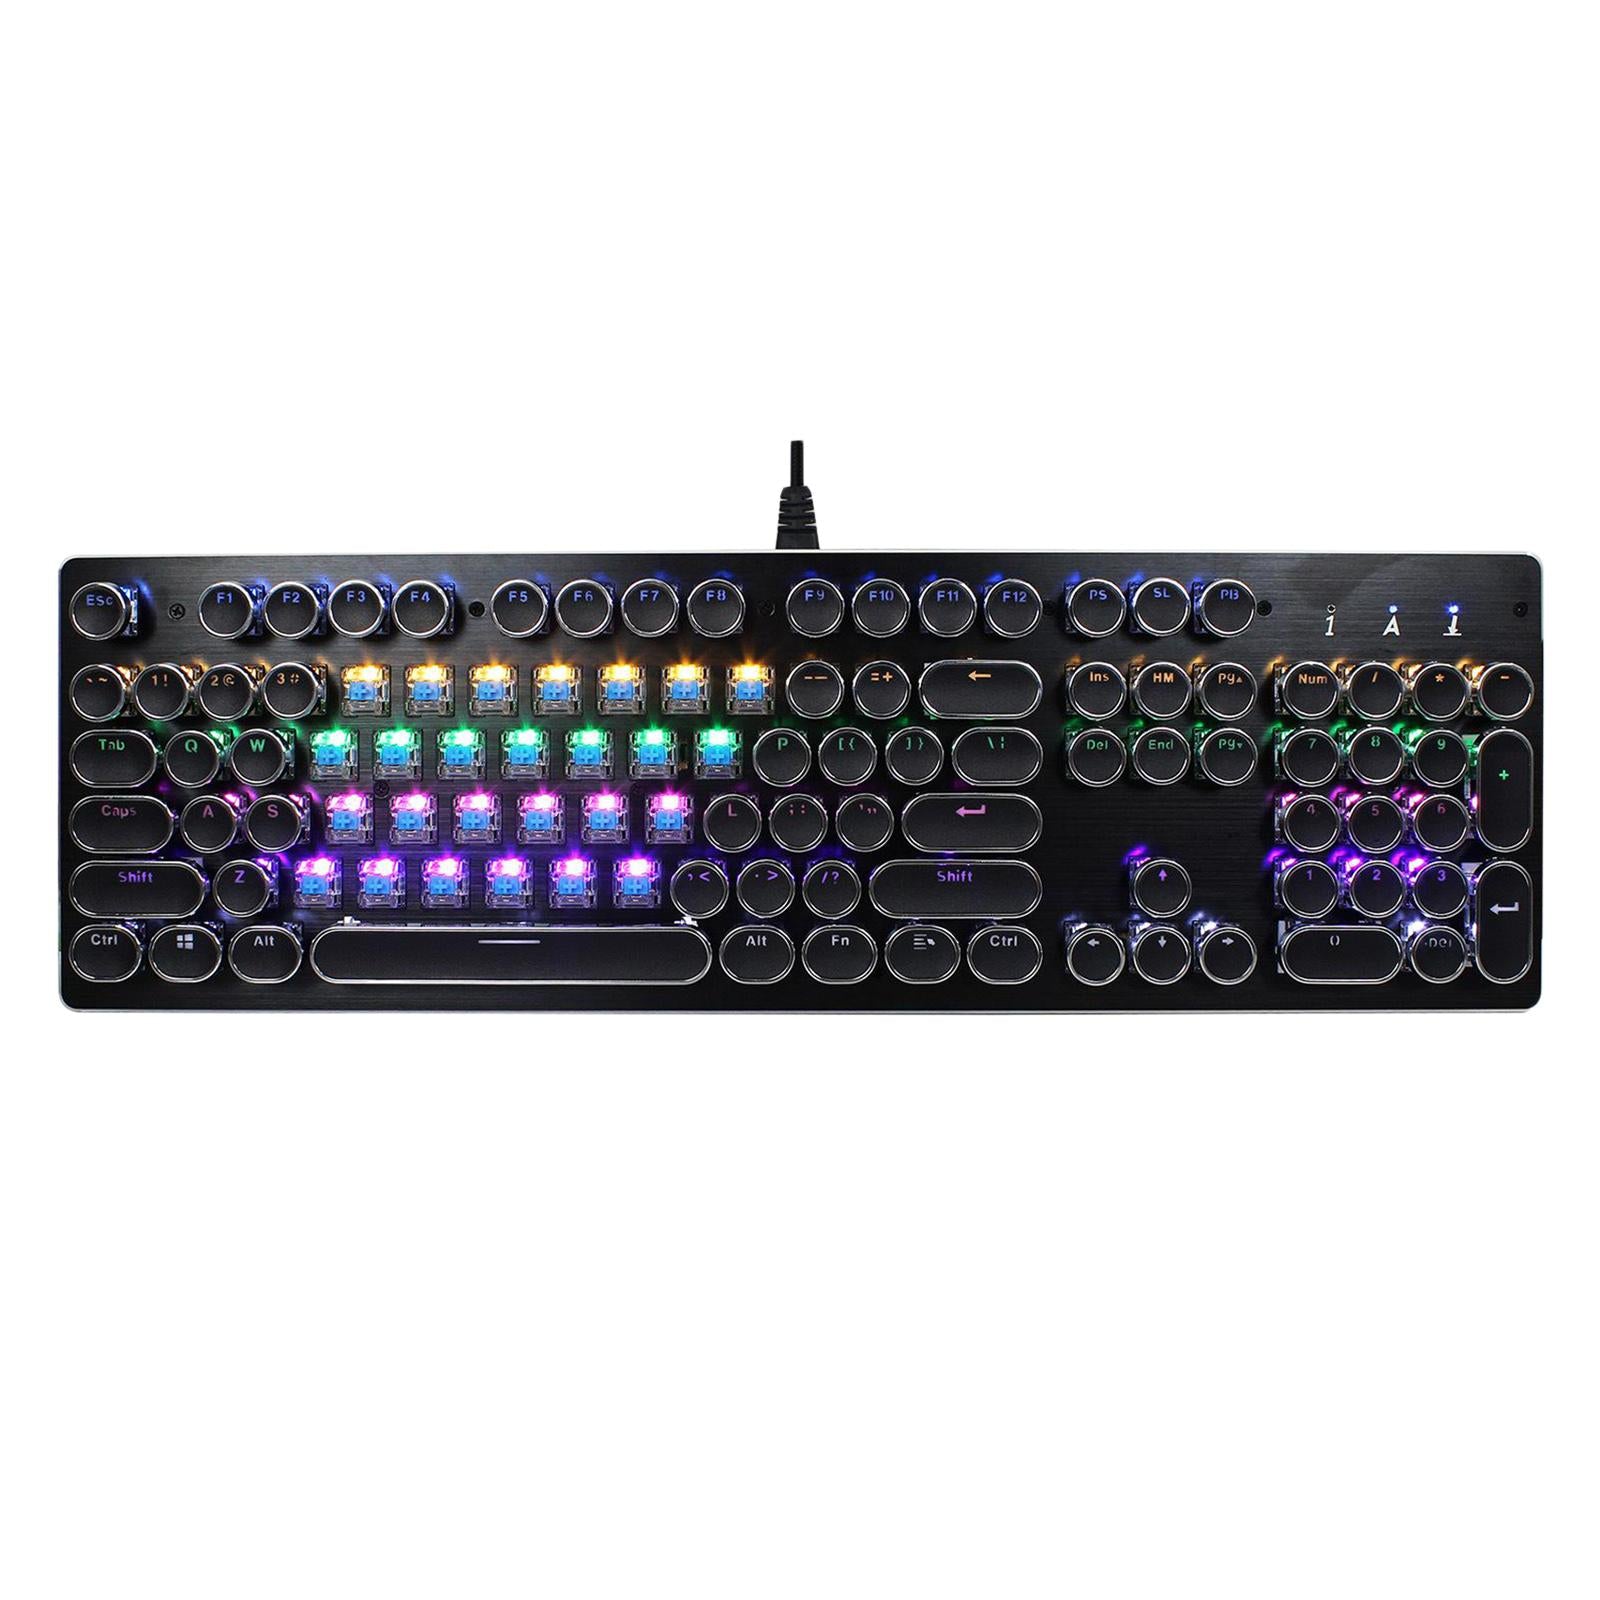 Professional USB Wired Typewriter Gaming Mechanical Keyboard RGB Backlit